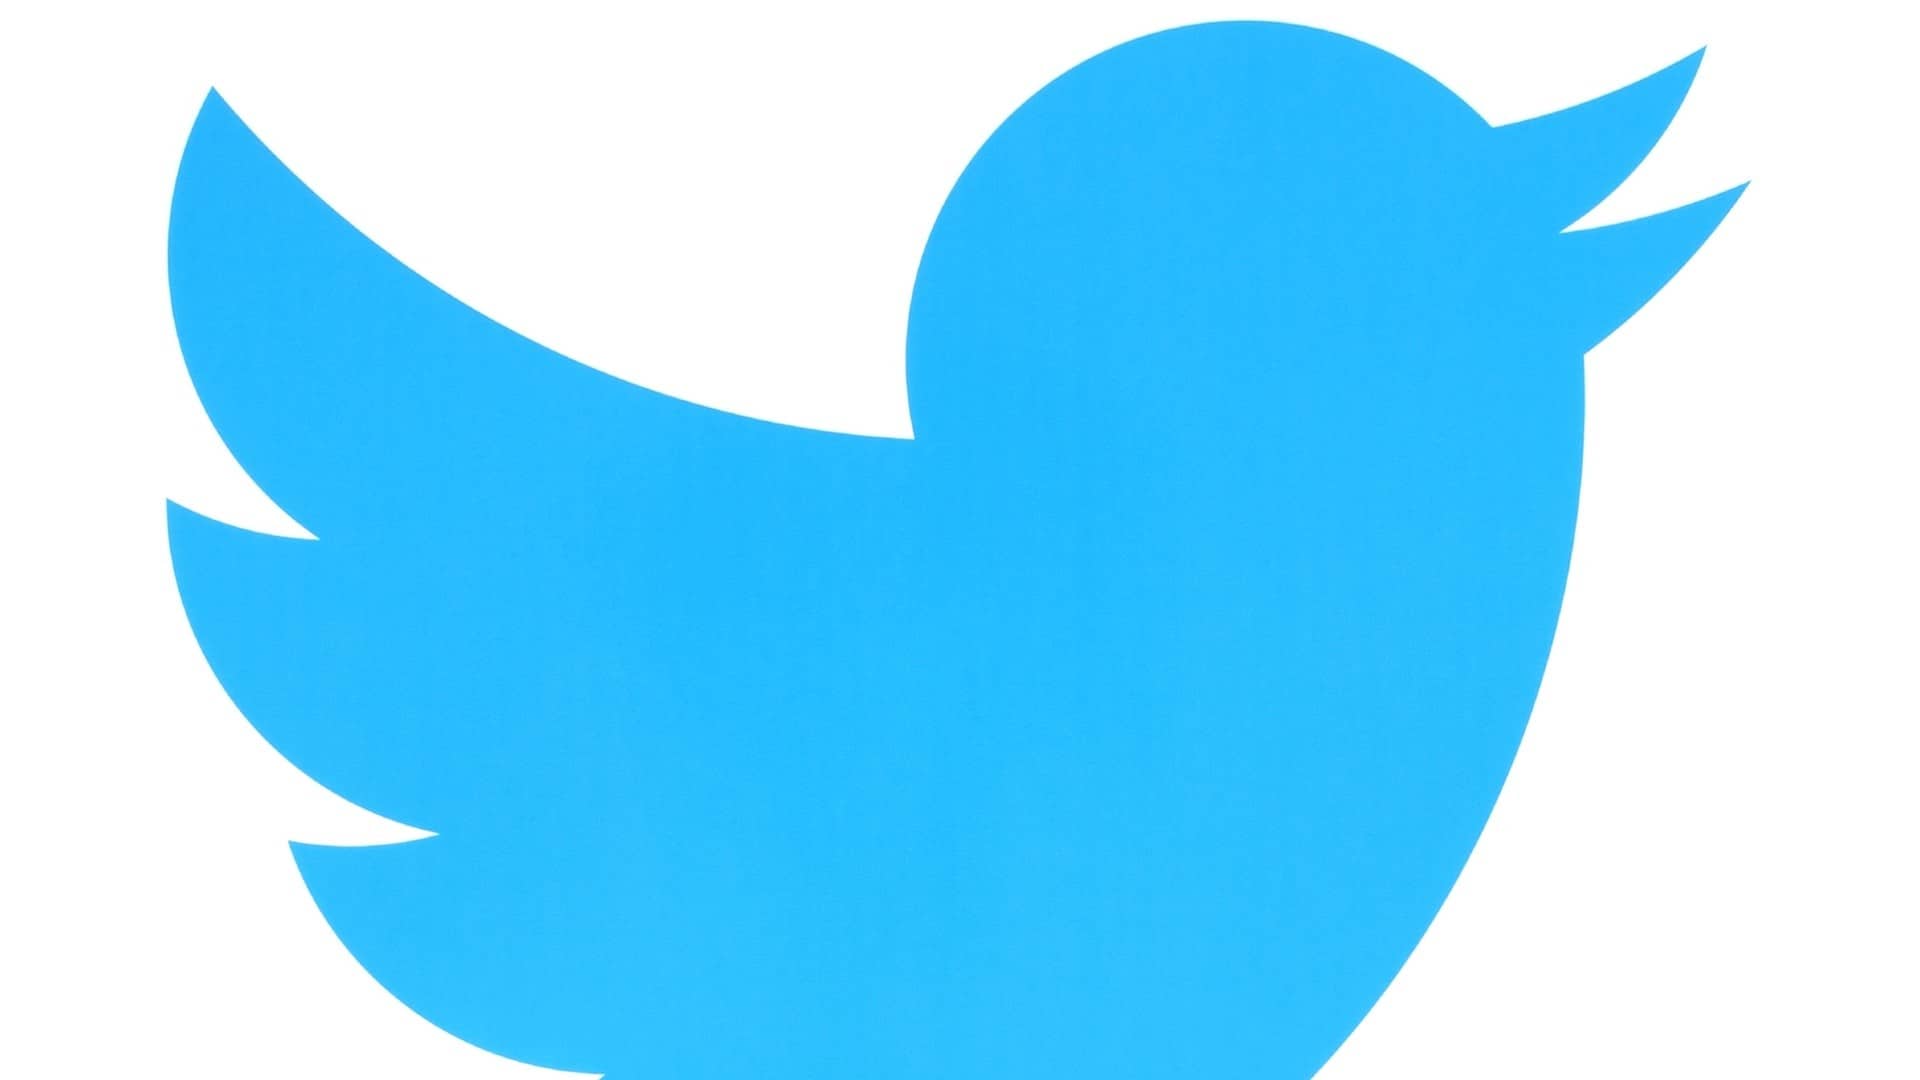 Adverteren op Twitter: uitgelichte tweets, accounts en trends